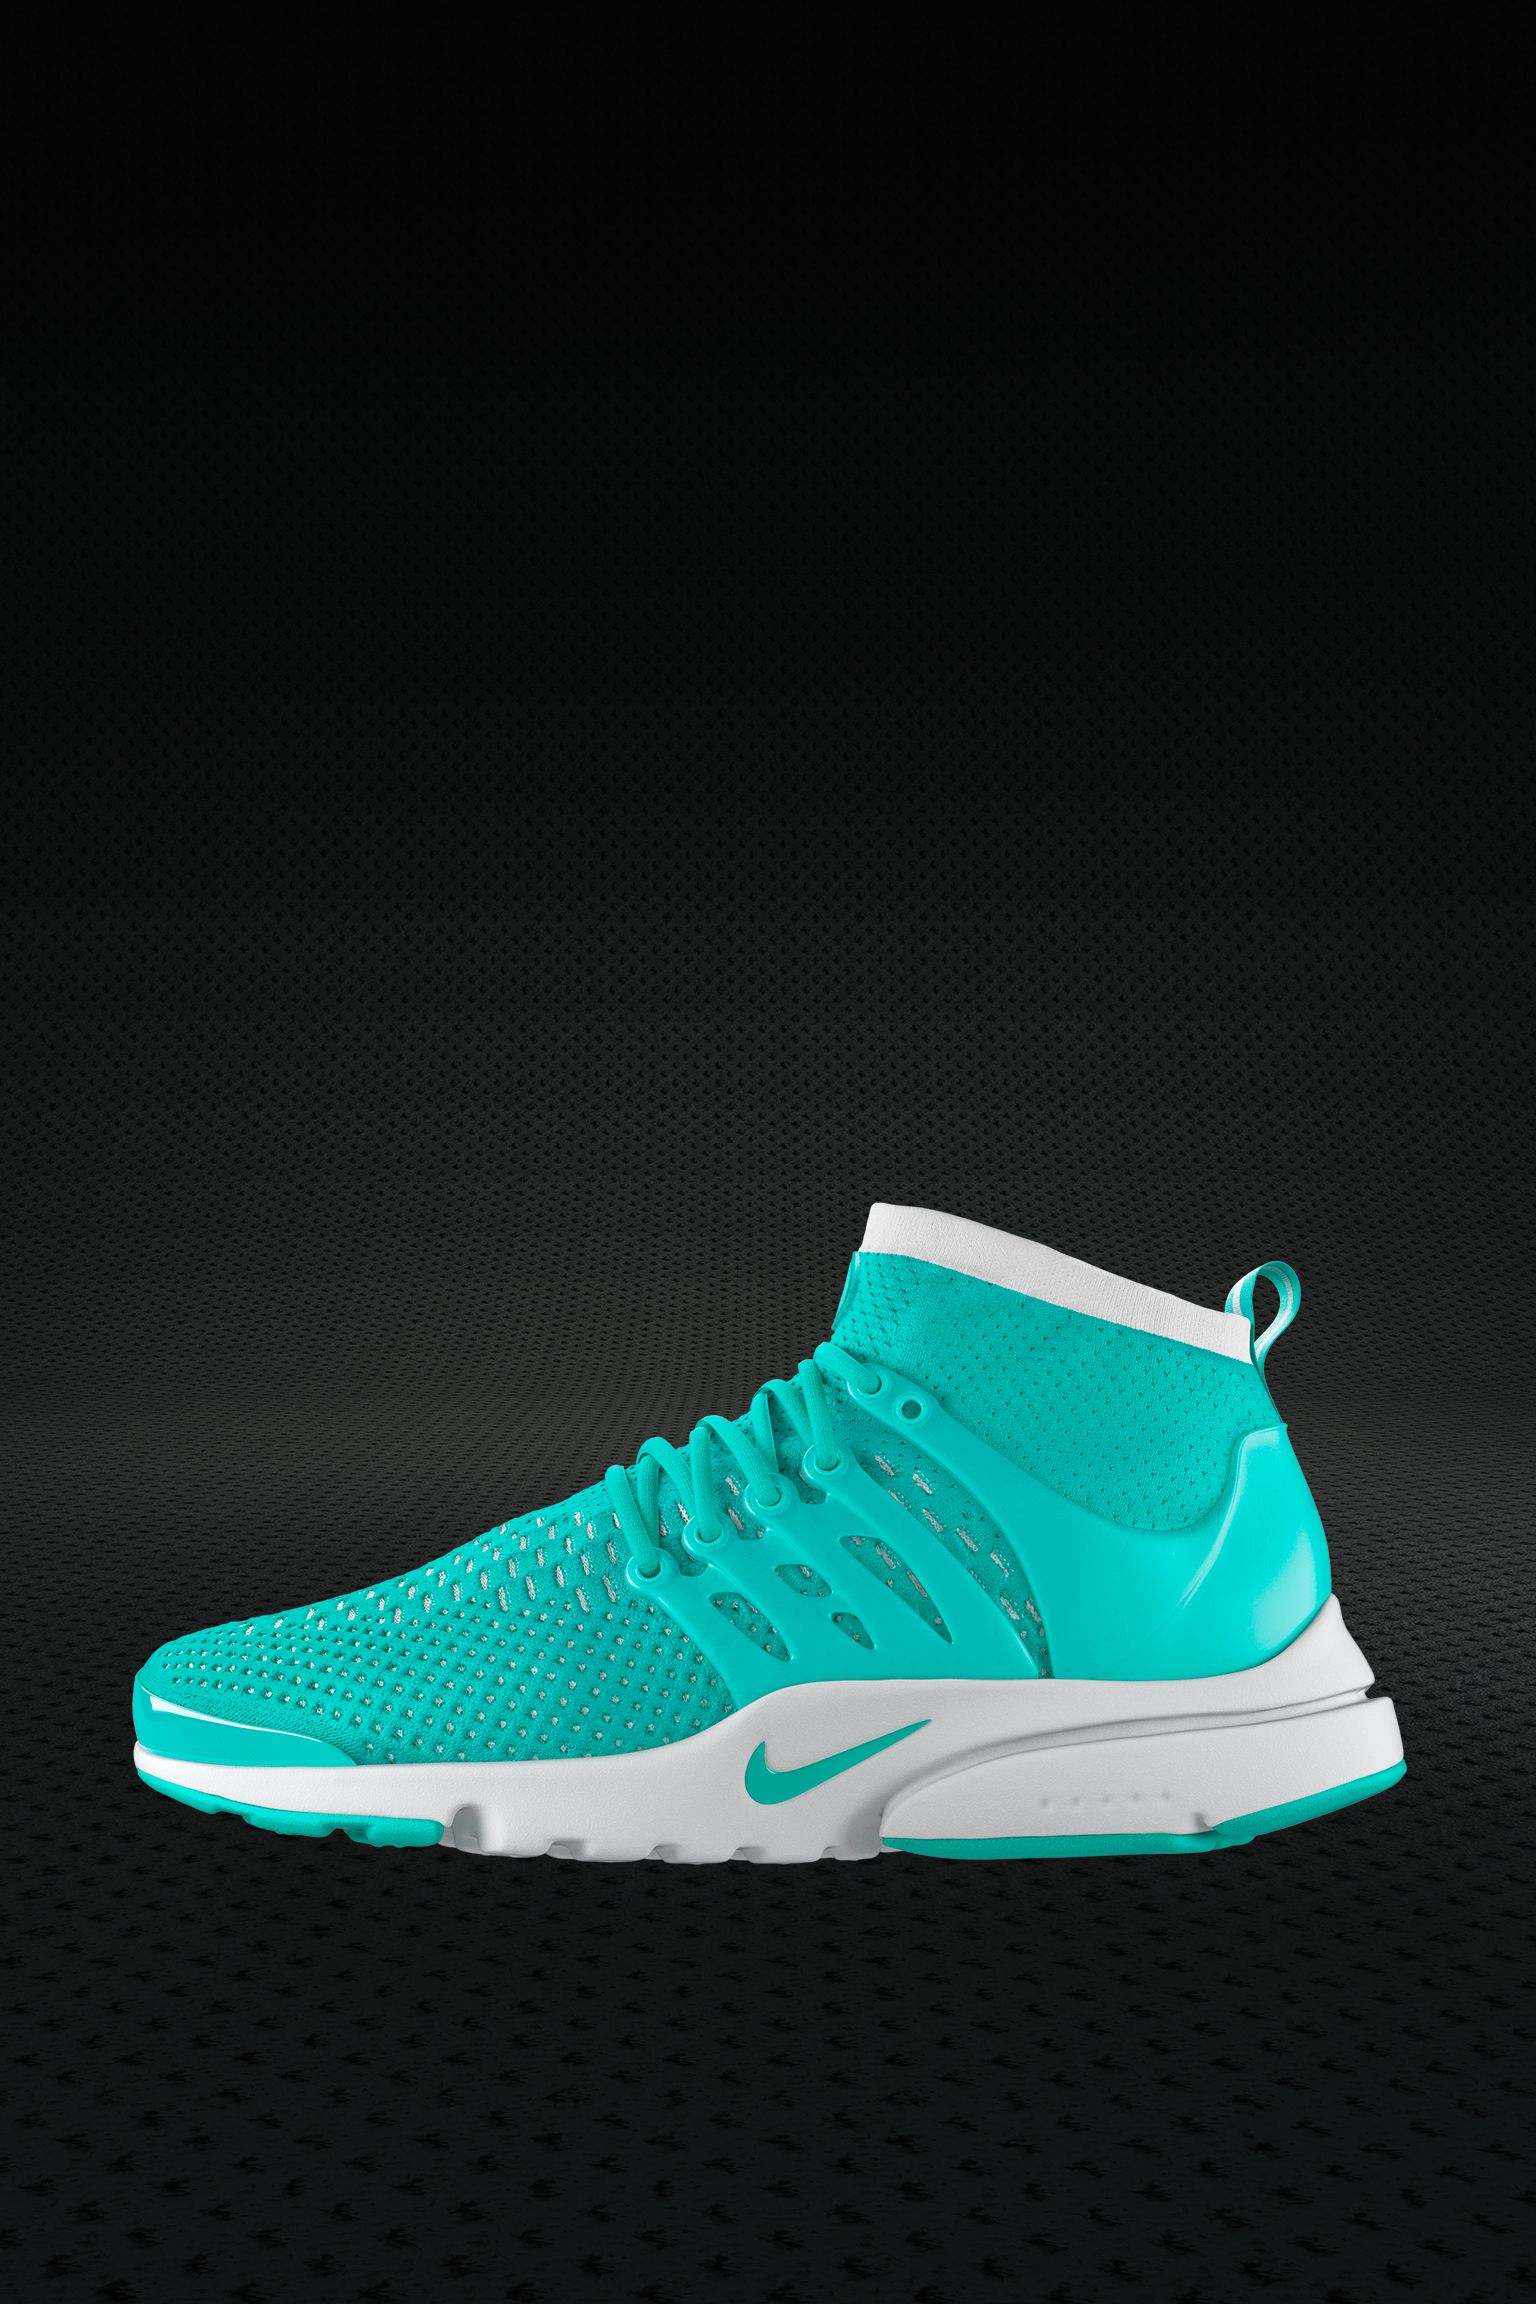 Women's Nike Presto Ultra Flyknit Turquoise' Release Nike SNKRS